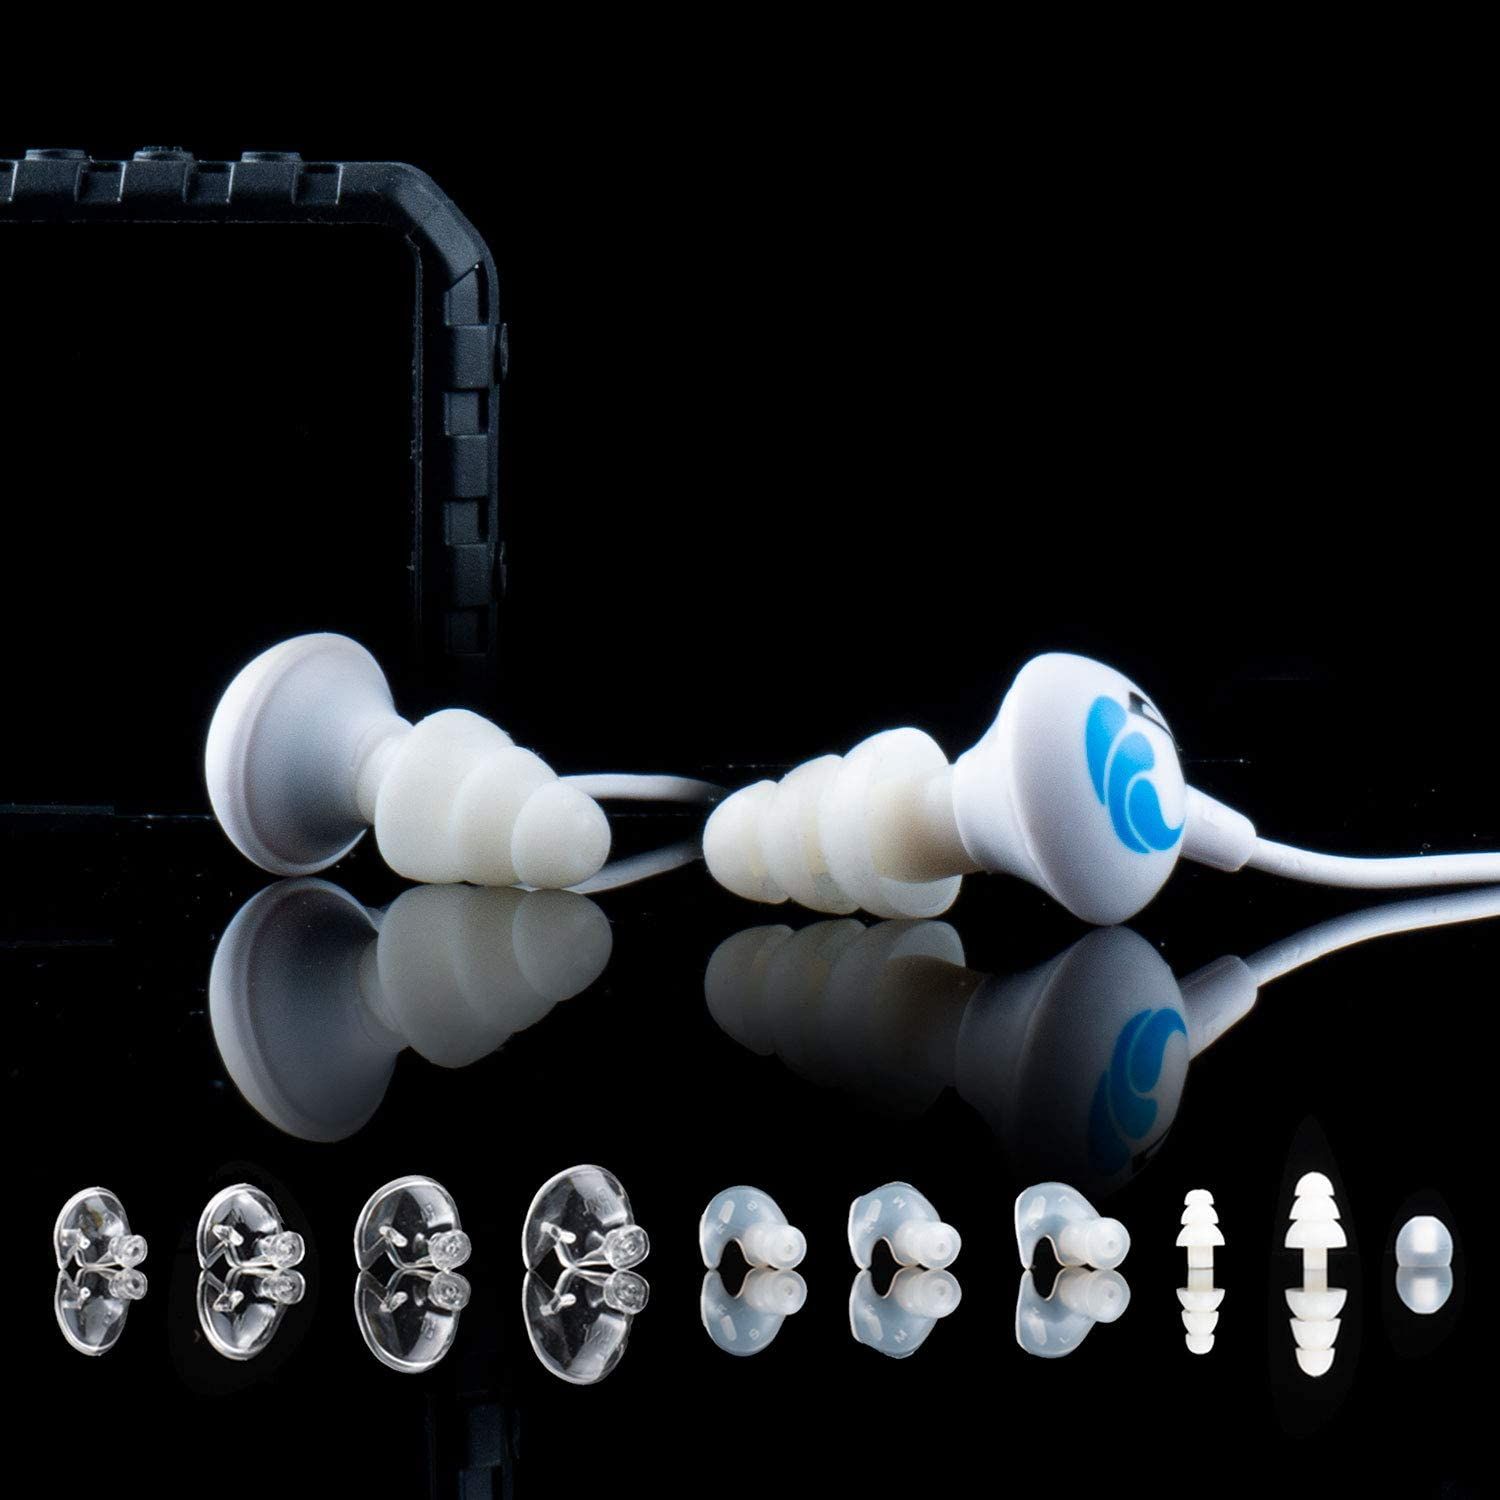 Swimbuds Sport Premium Waterproof Headphones Contents